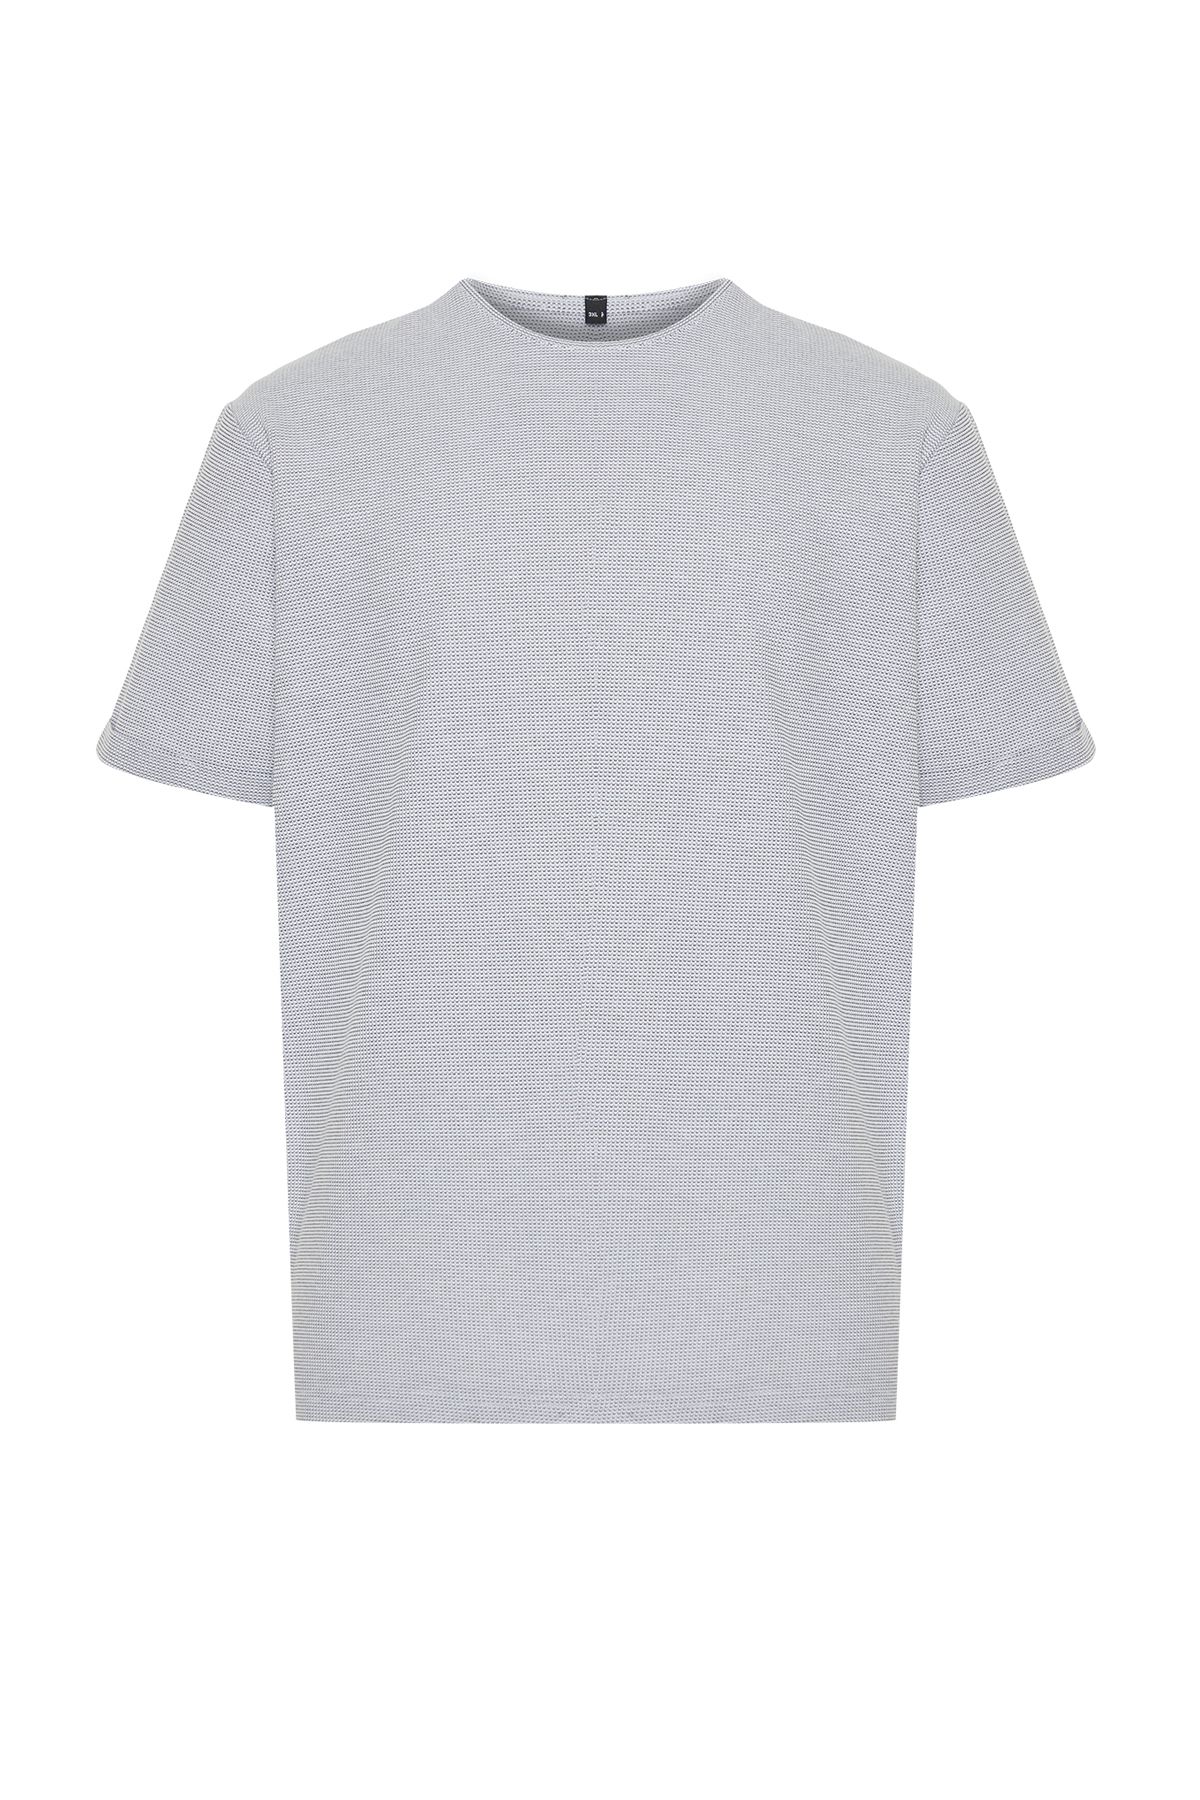 TRENDYOL MAN Büyük Beden Beyaz Regular/Normal Kesim Dokulu T-shirt TMNSS24BF00061